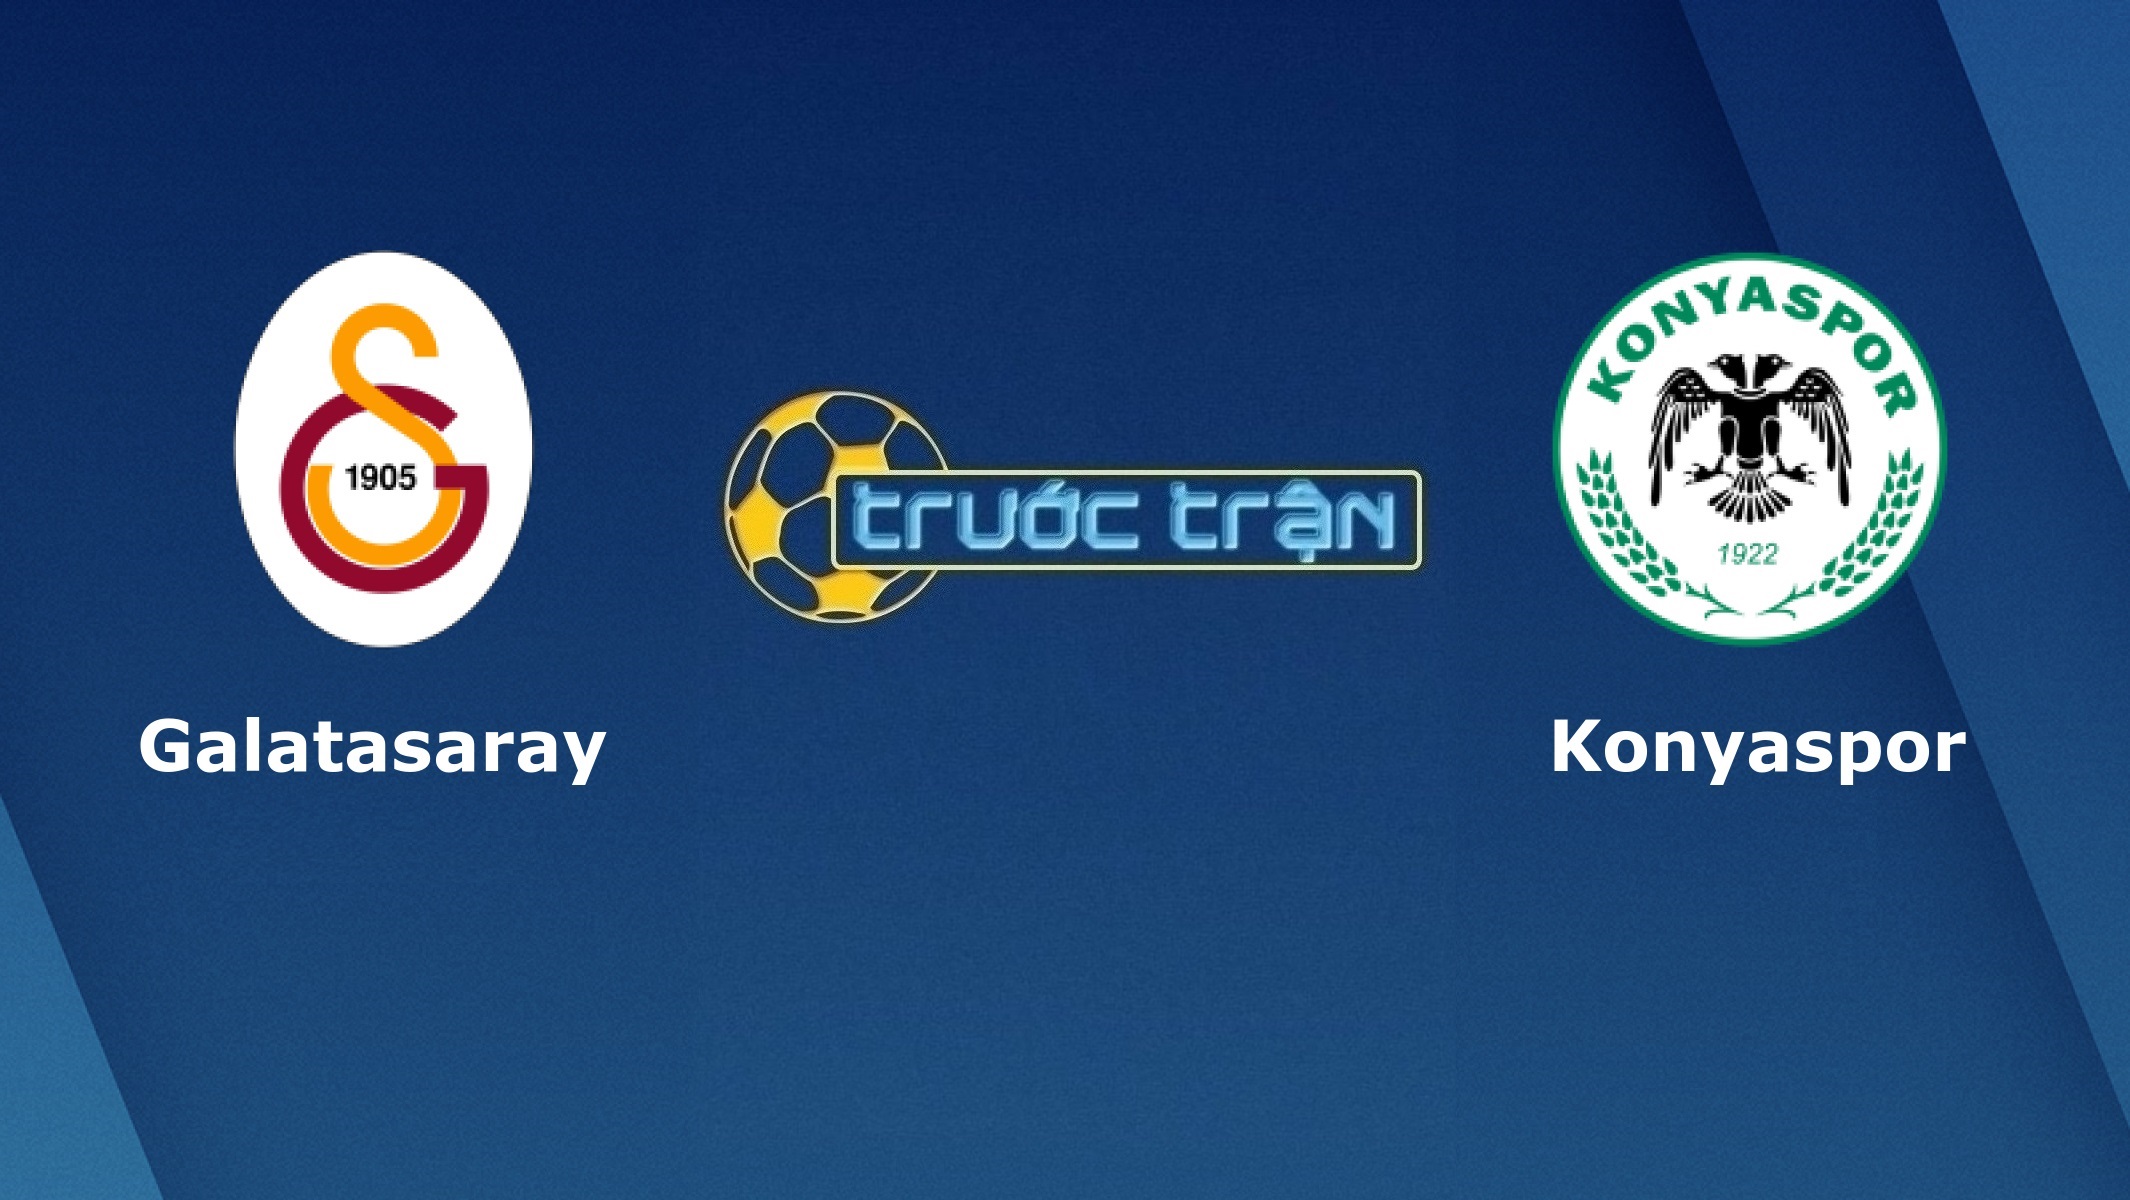 Galatasaray vs Konyaspor – Tip kèo bóng đá hôm nay – 00h30 29/04/2021